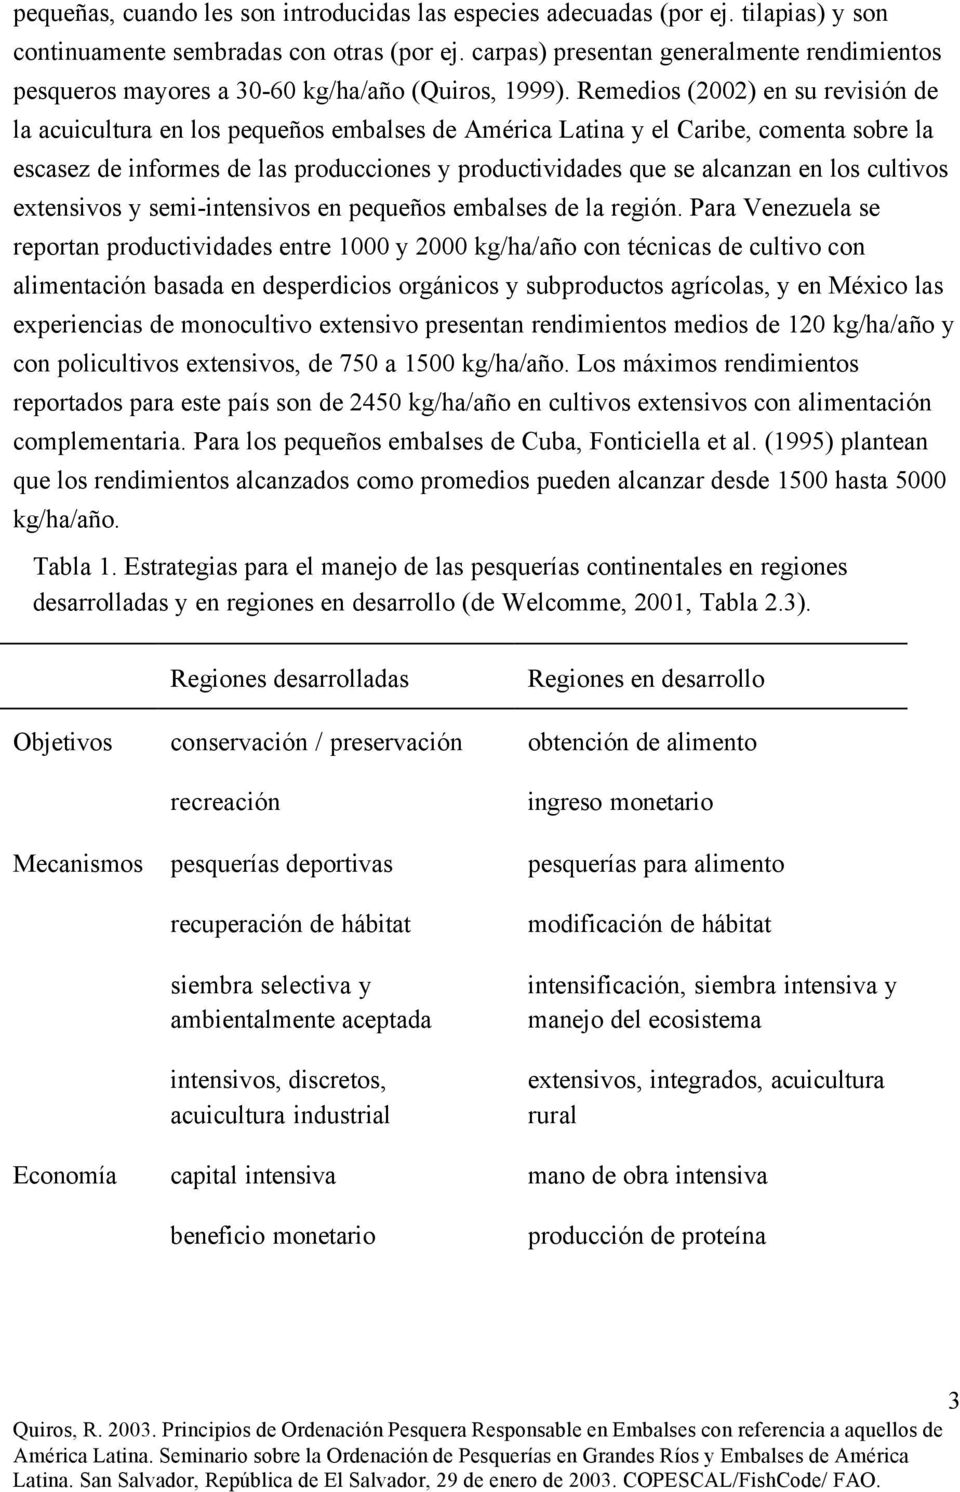 Remedios (2002) en su revisión de la acuicultura en los pequeños embalses de América Latina y el Caribe, comenta sobre la escasez de informes de las producciones y productividades que se alcanzan en